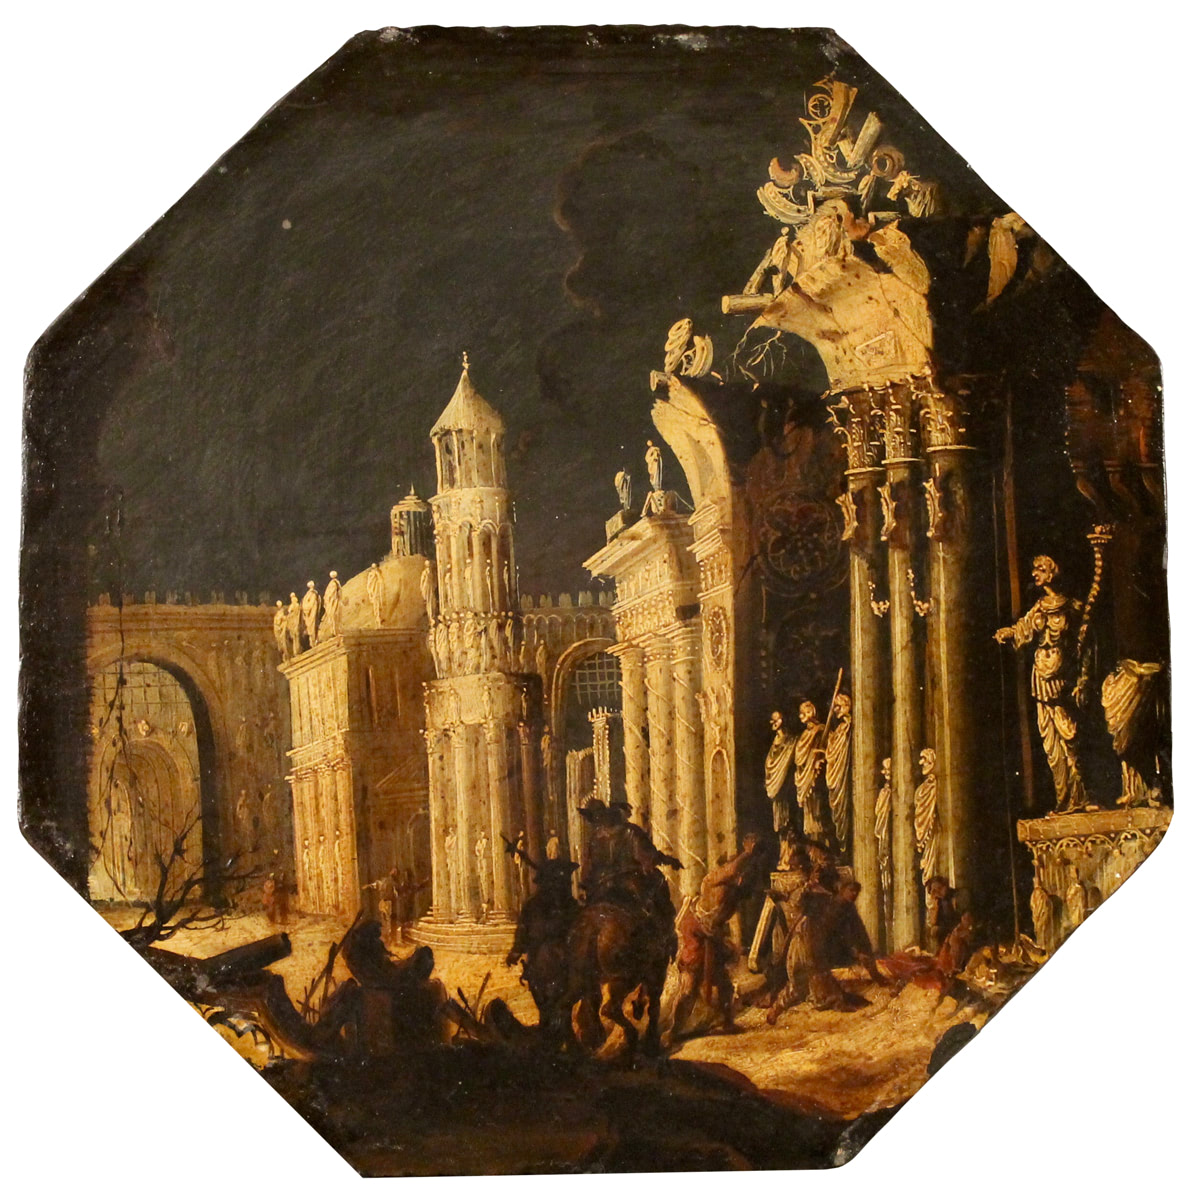 François De Nomé detto Monsù Desiderio (attr.) (1593/1644) "Due scene di martirio contornate da architetture oniriche e personaggi" - "Two martyrdom scenes surrounded by dreamlike architectures and characters"